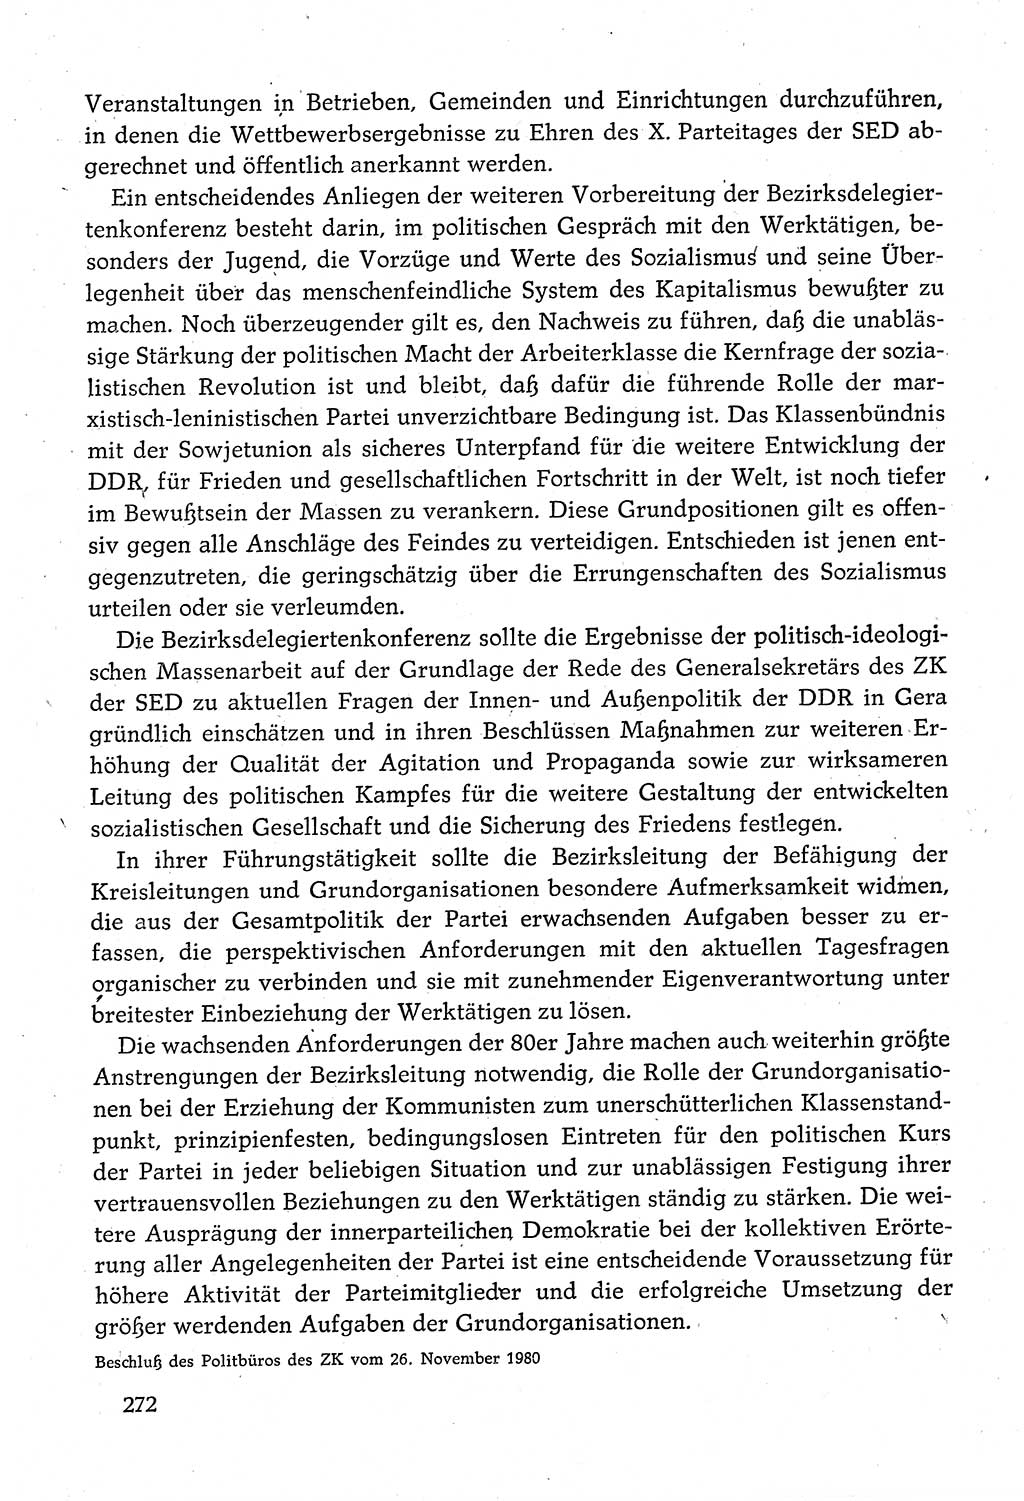 Dokumente der Sozialistischen Einheitspartei Deutschlands (SED) [Deutsche Demokratische Republik (DDR)] 1980-1981, Seite 272 (Dok. SED DDR 1980-1981, S. 272)